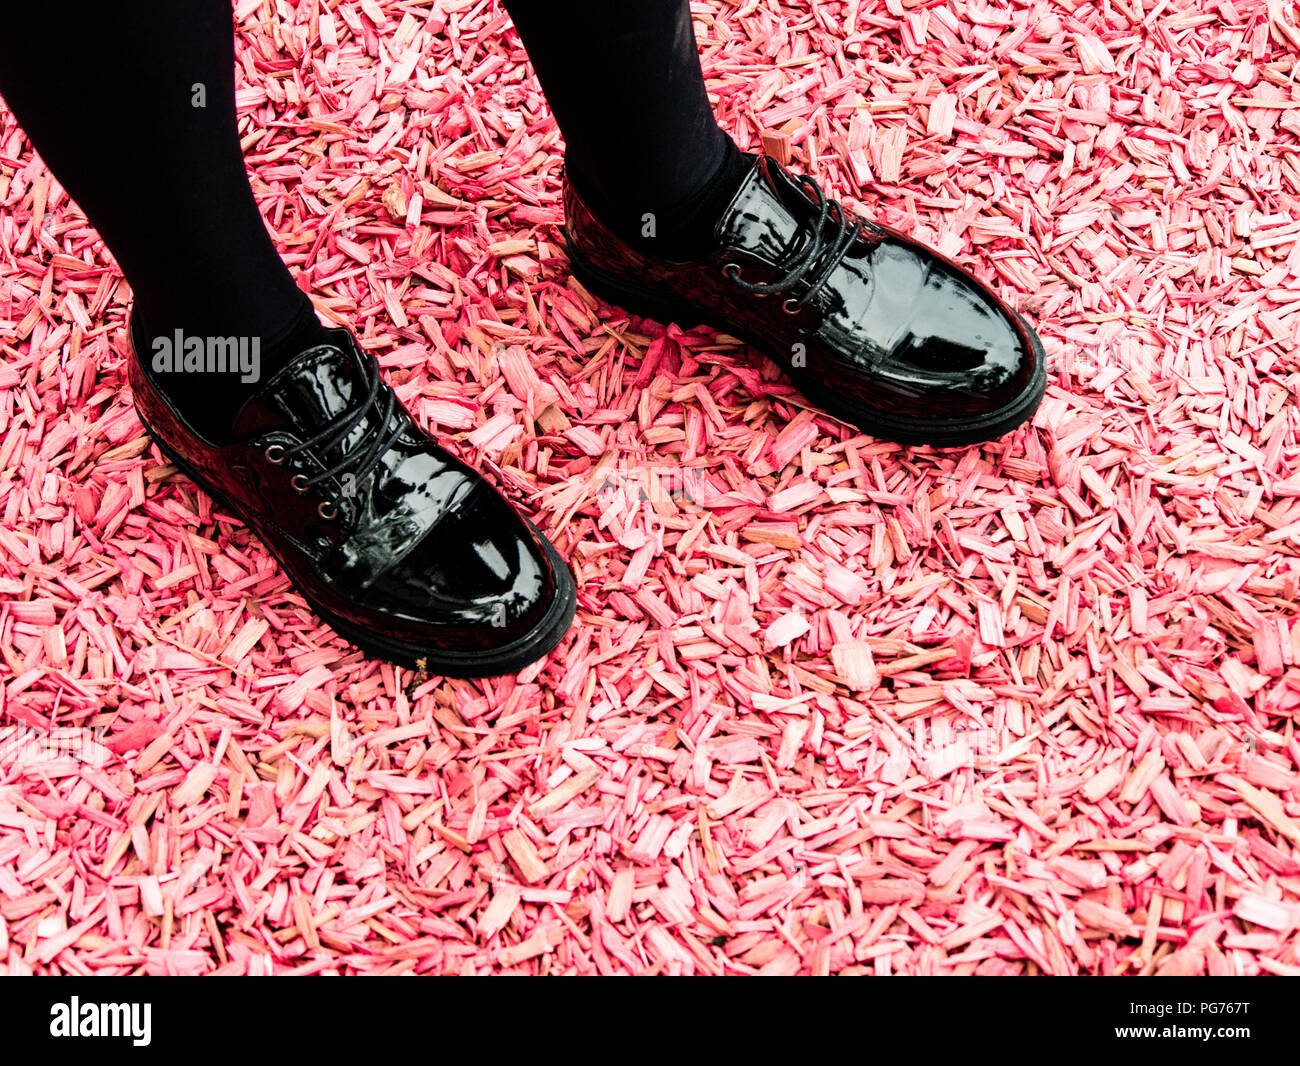 Chaussures noires brillantes de la jeune fille rose sur la masse de copeaux Banque D'Images